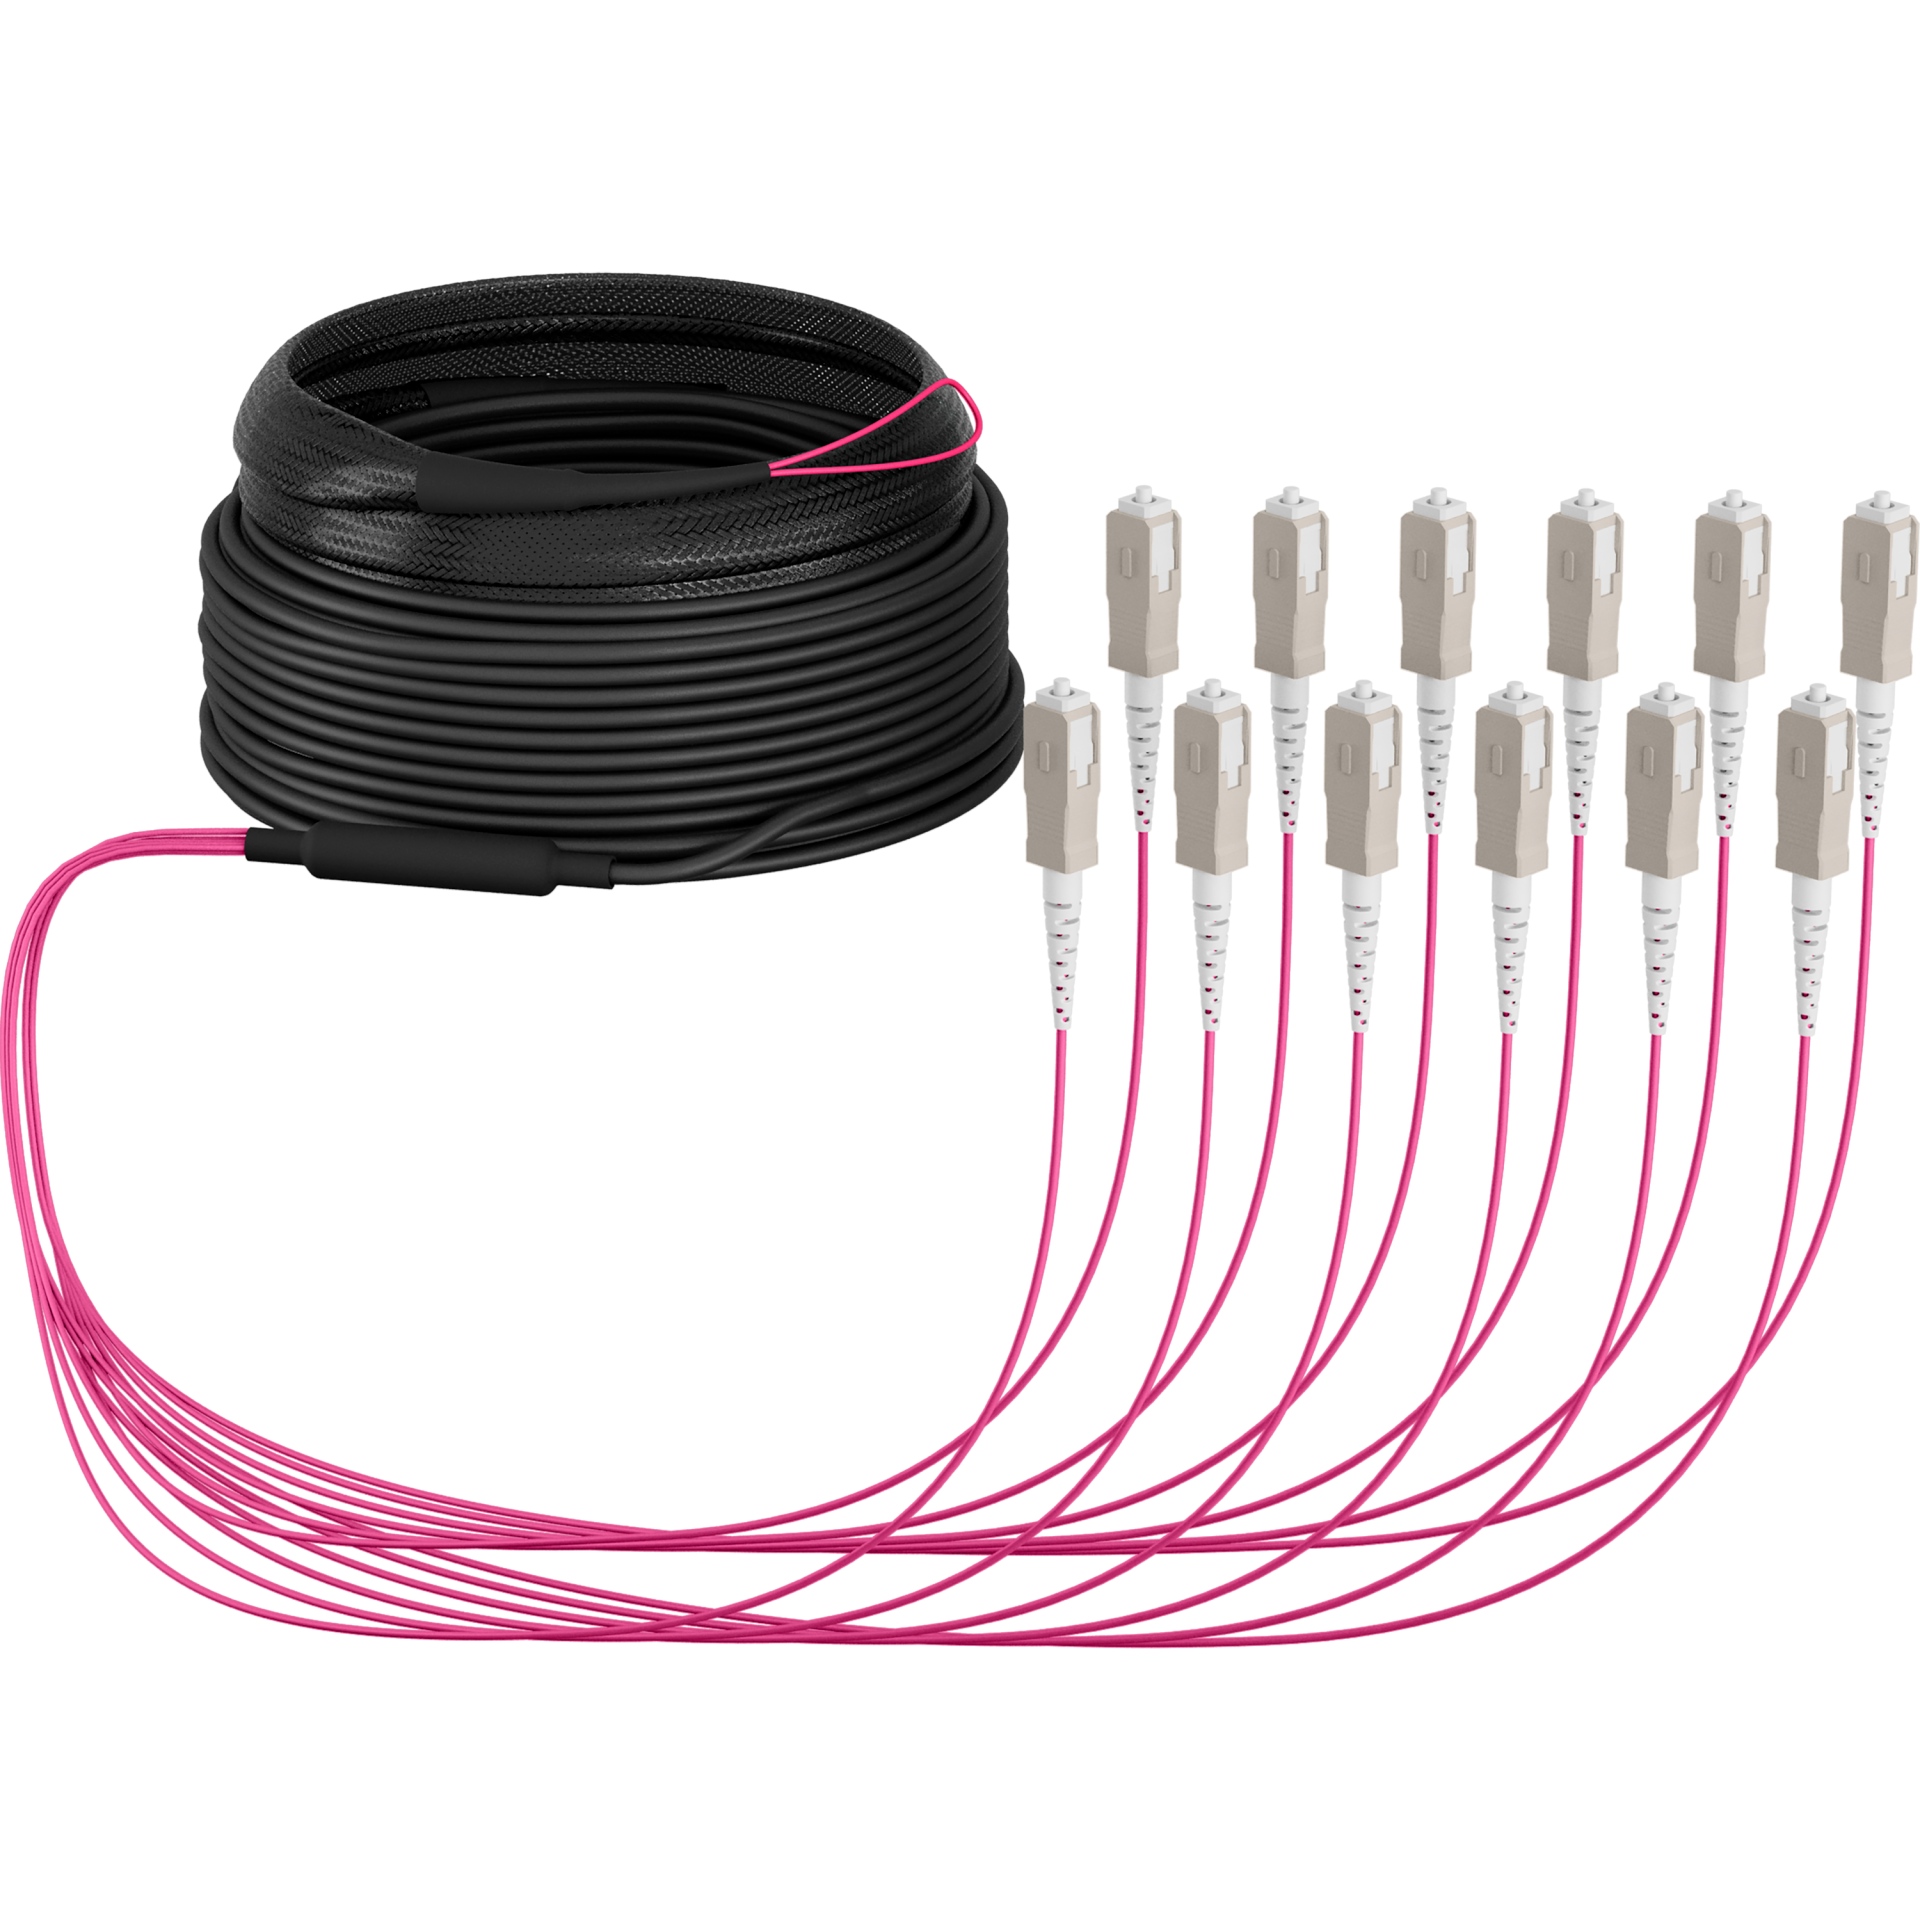 Trunk cable U-DQ(ZN)BH OM4 12G (1x12) SC-SC,20m Dca LSZH